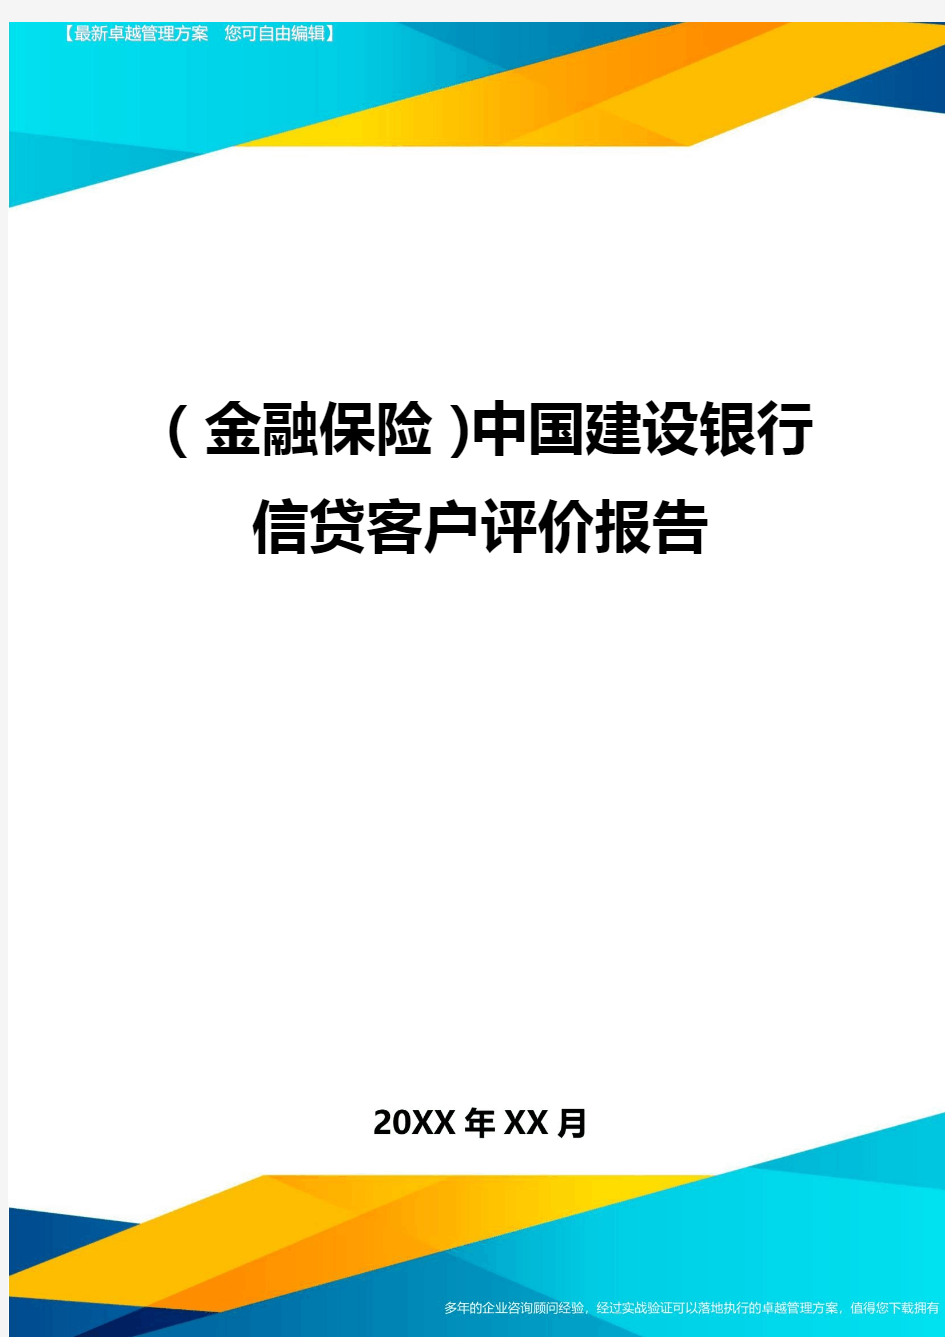 2020年(金融保险)中国建设银行信贷客户评价报告